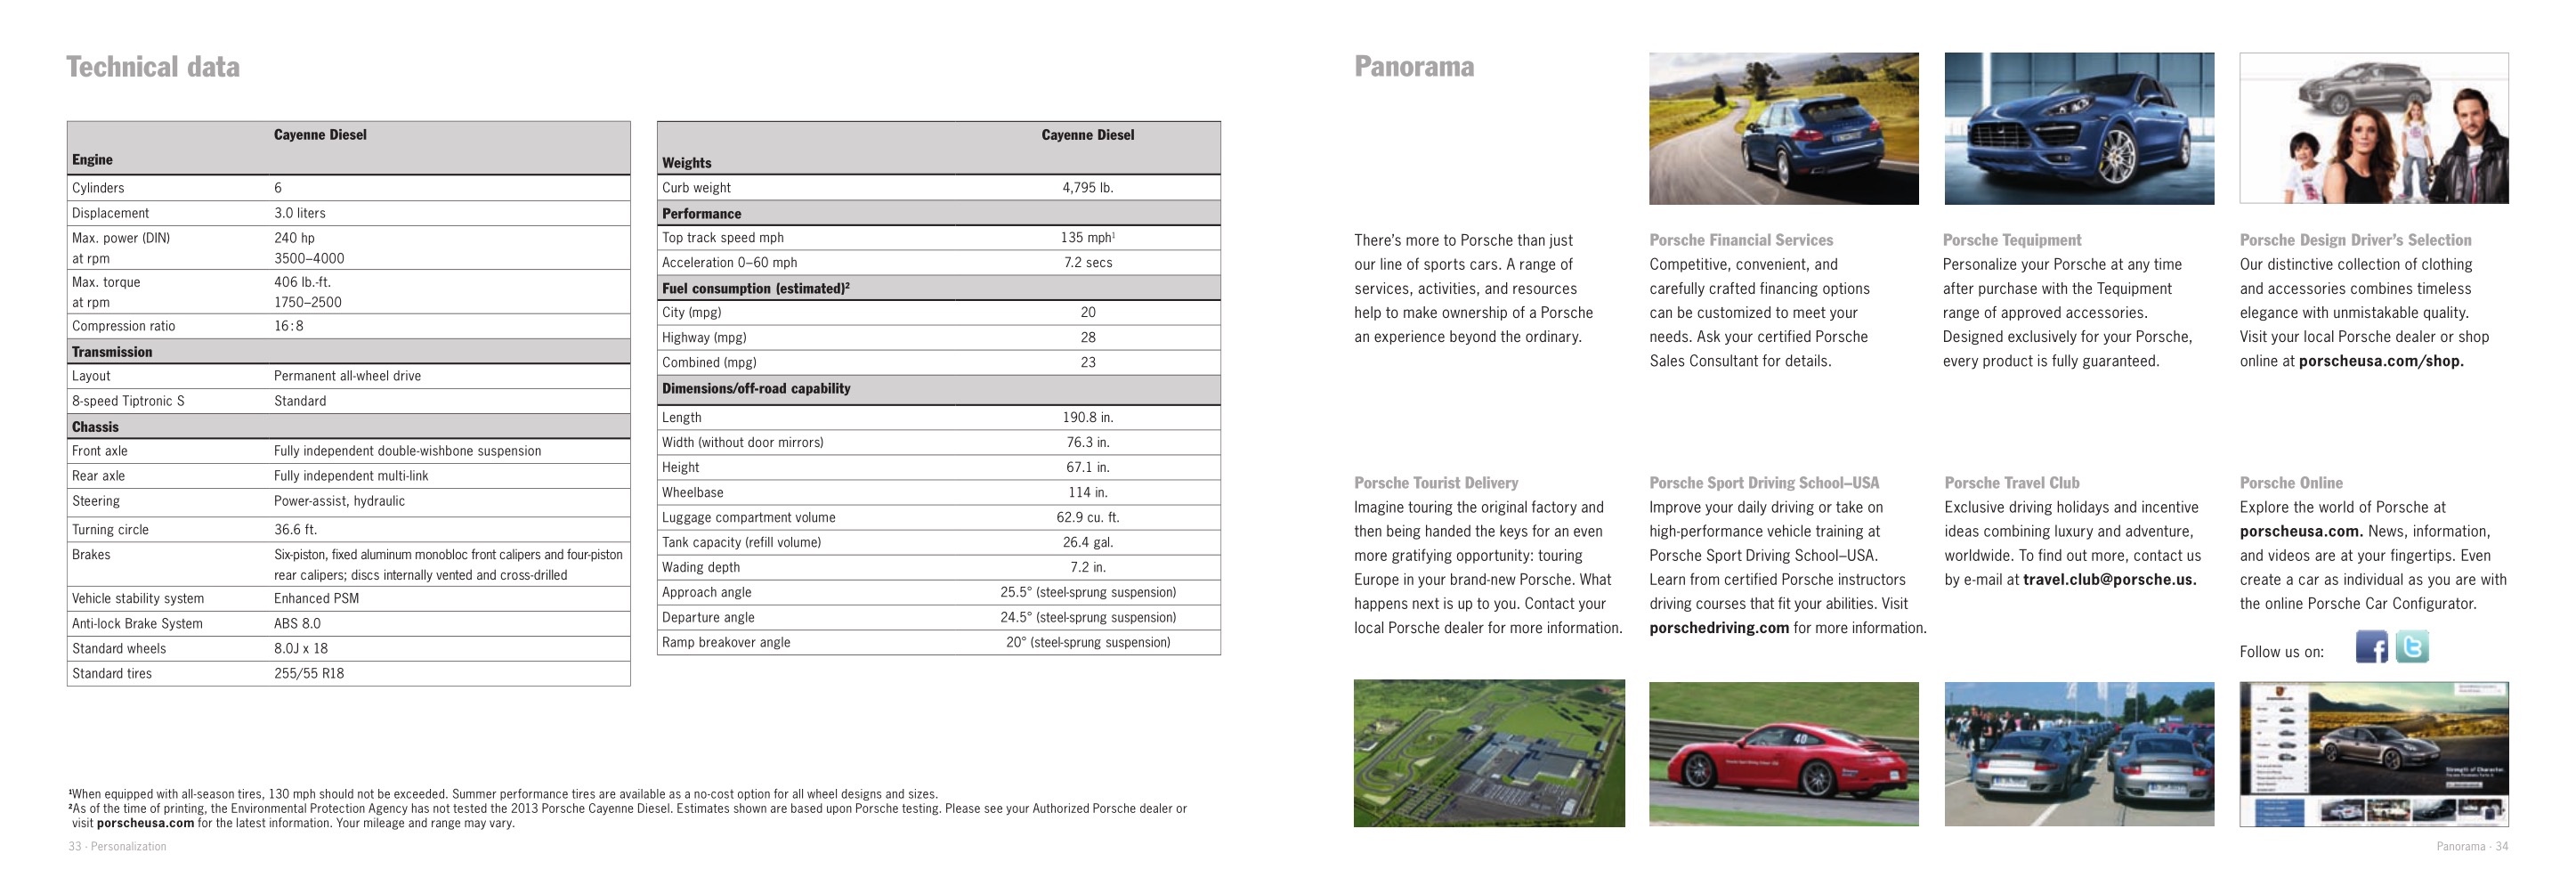 2012 Porsche Cayenne Diesel Brochure Page 16